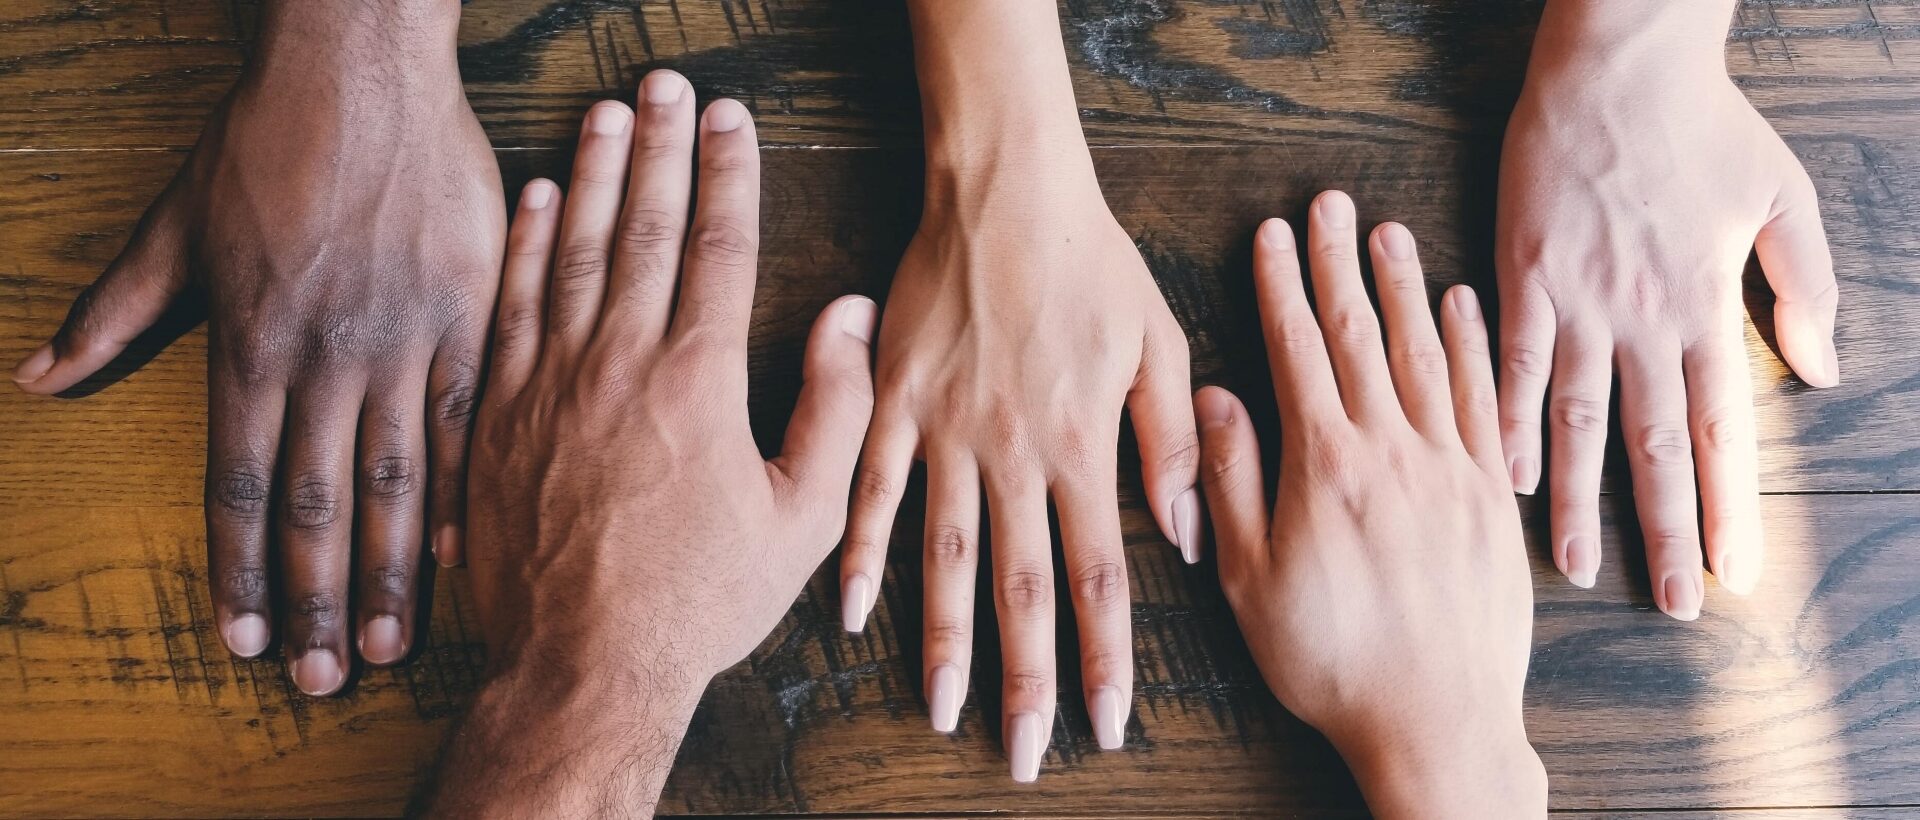 Hände in unterschiedlichen Hauttönen sind auf einer Holzplatte platziert und symbolisieren Diversity.